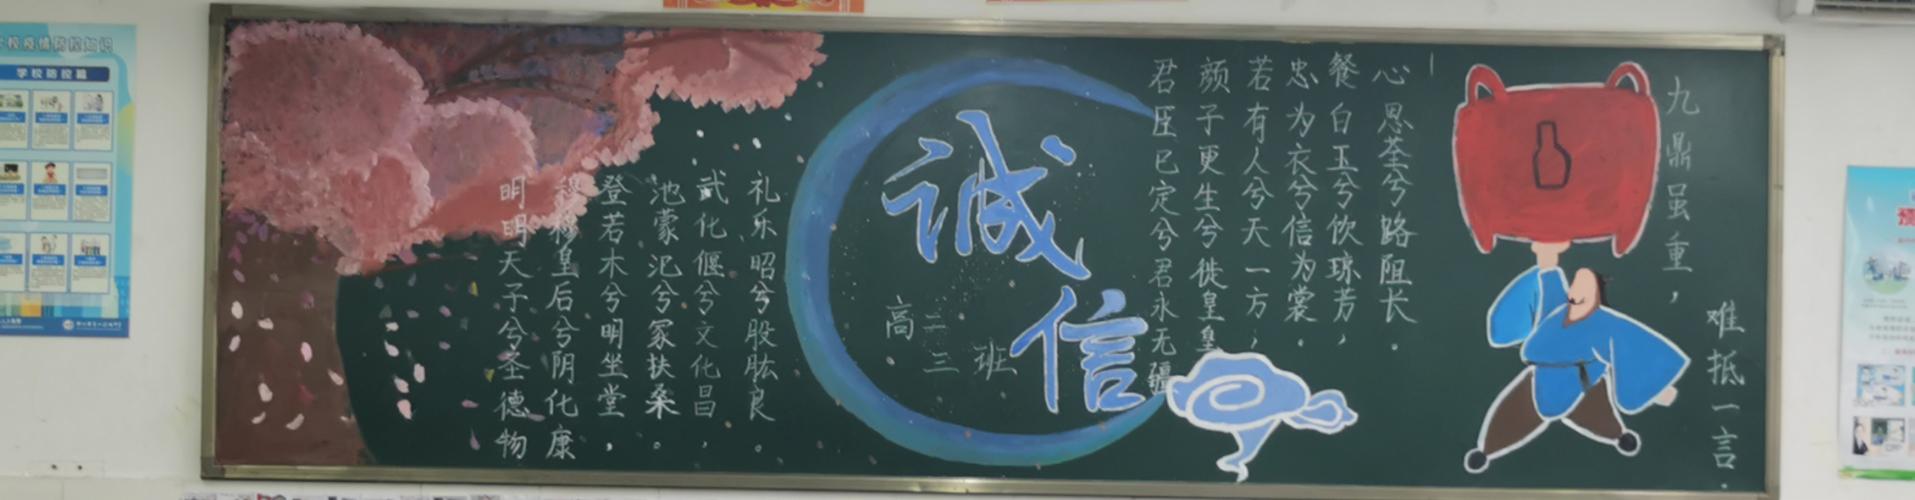 5月15日中午郑州市第107高级中学组织开展了以诚信为主题的黑板报